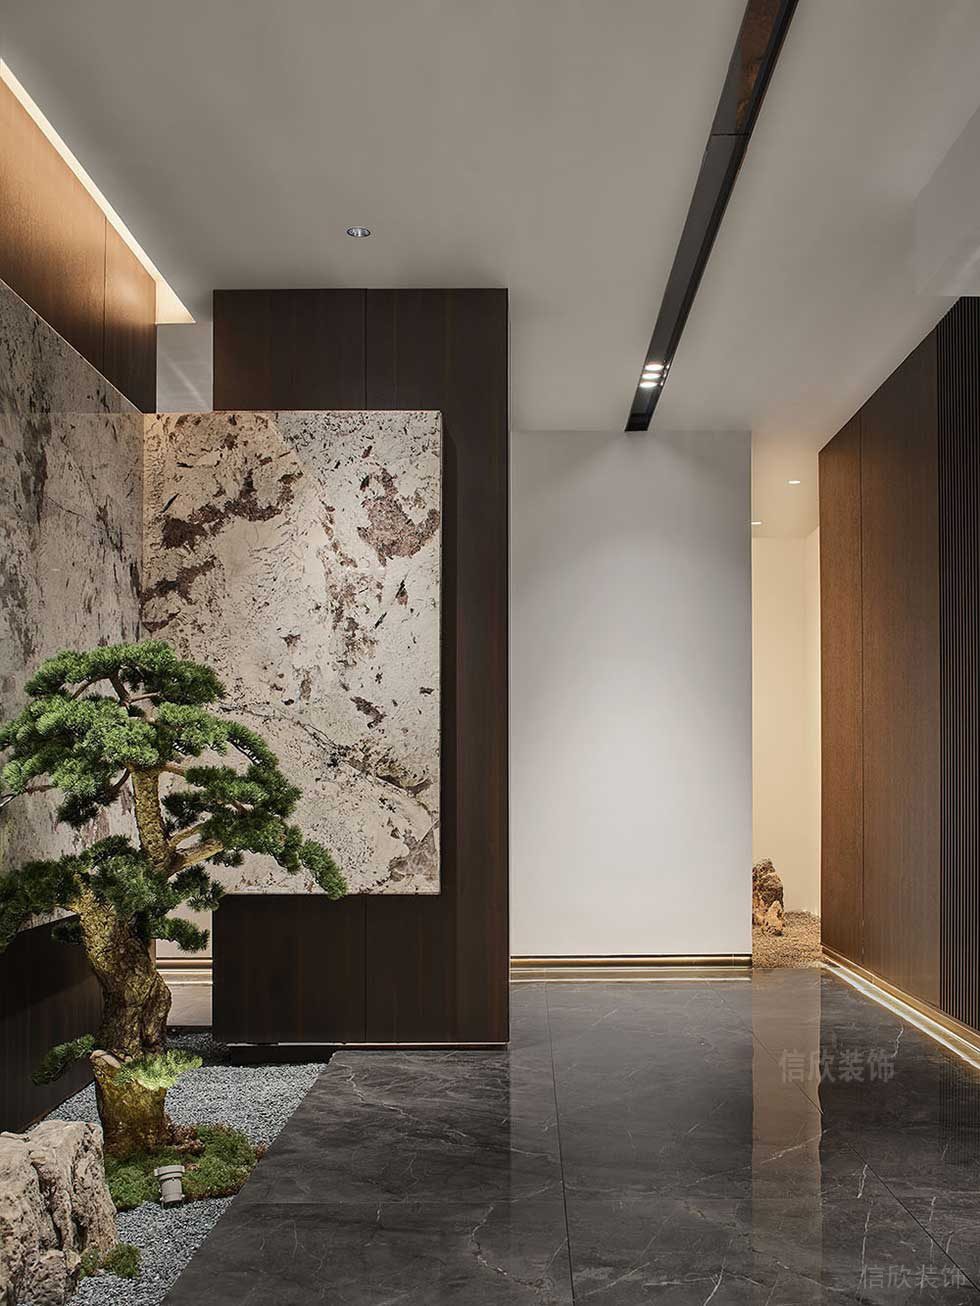 现代中式风格办公室走廊绿植景观效果图